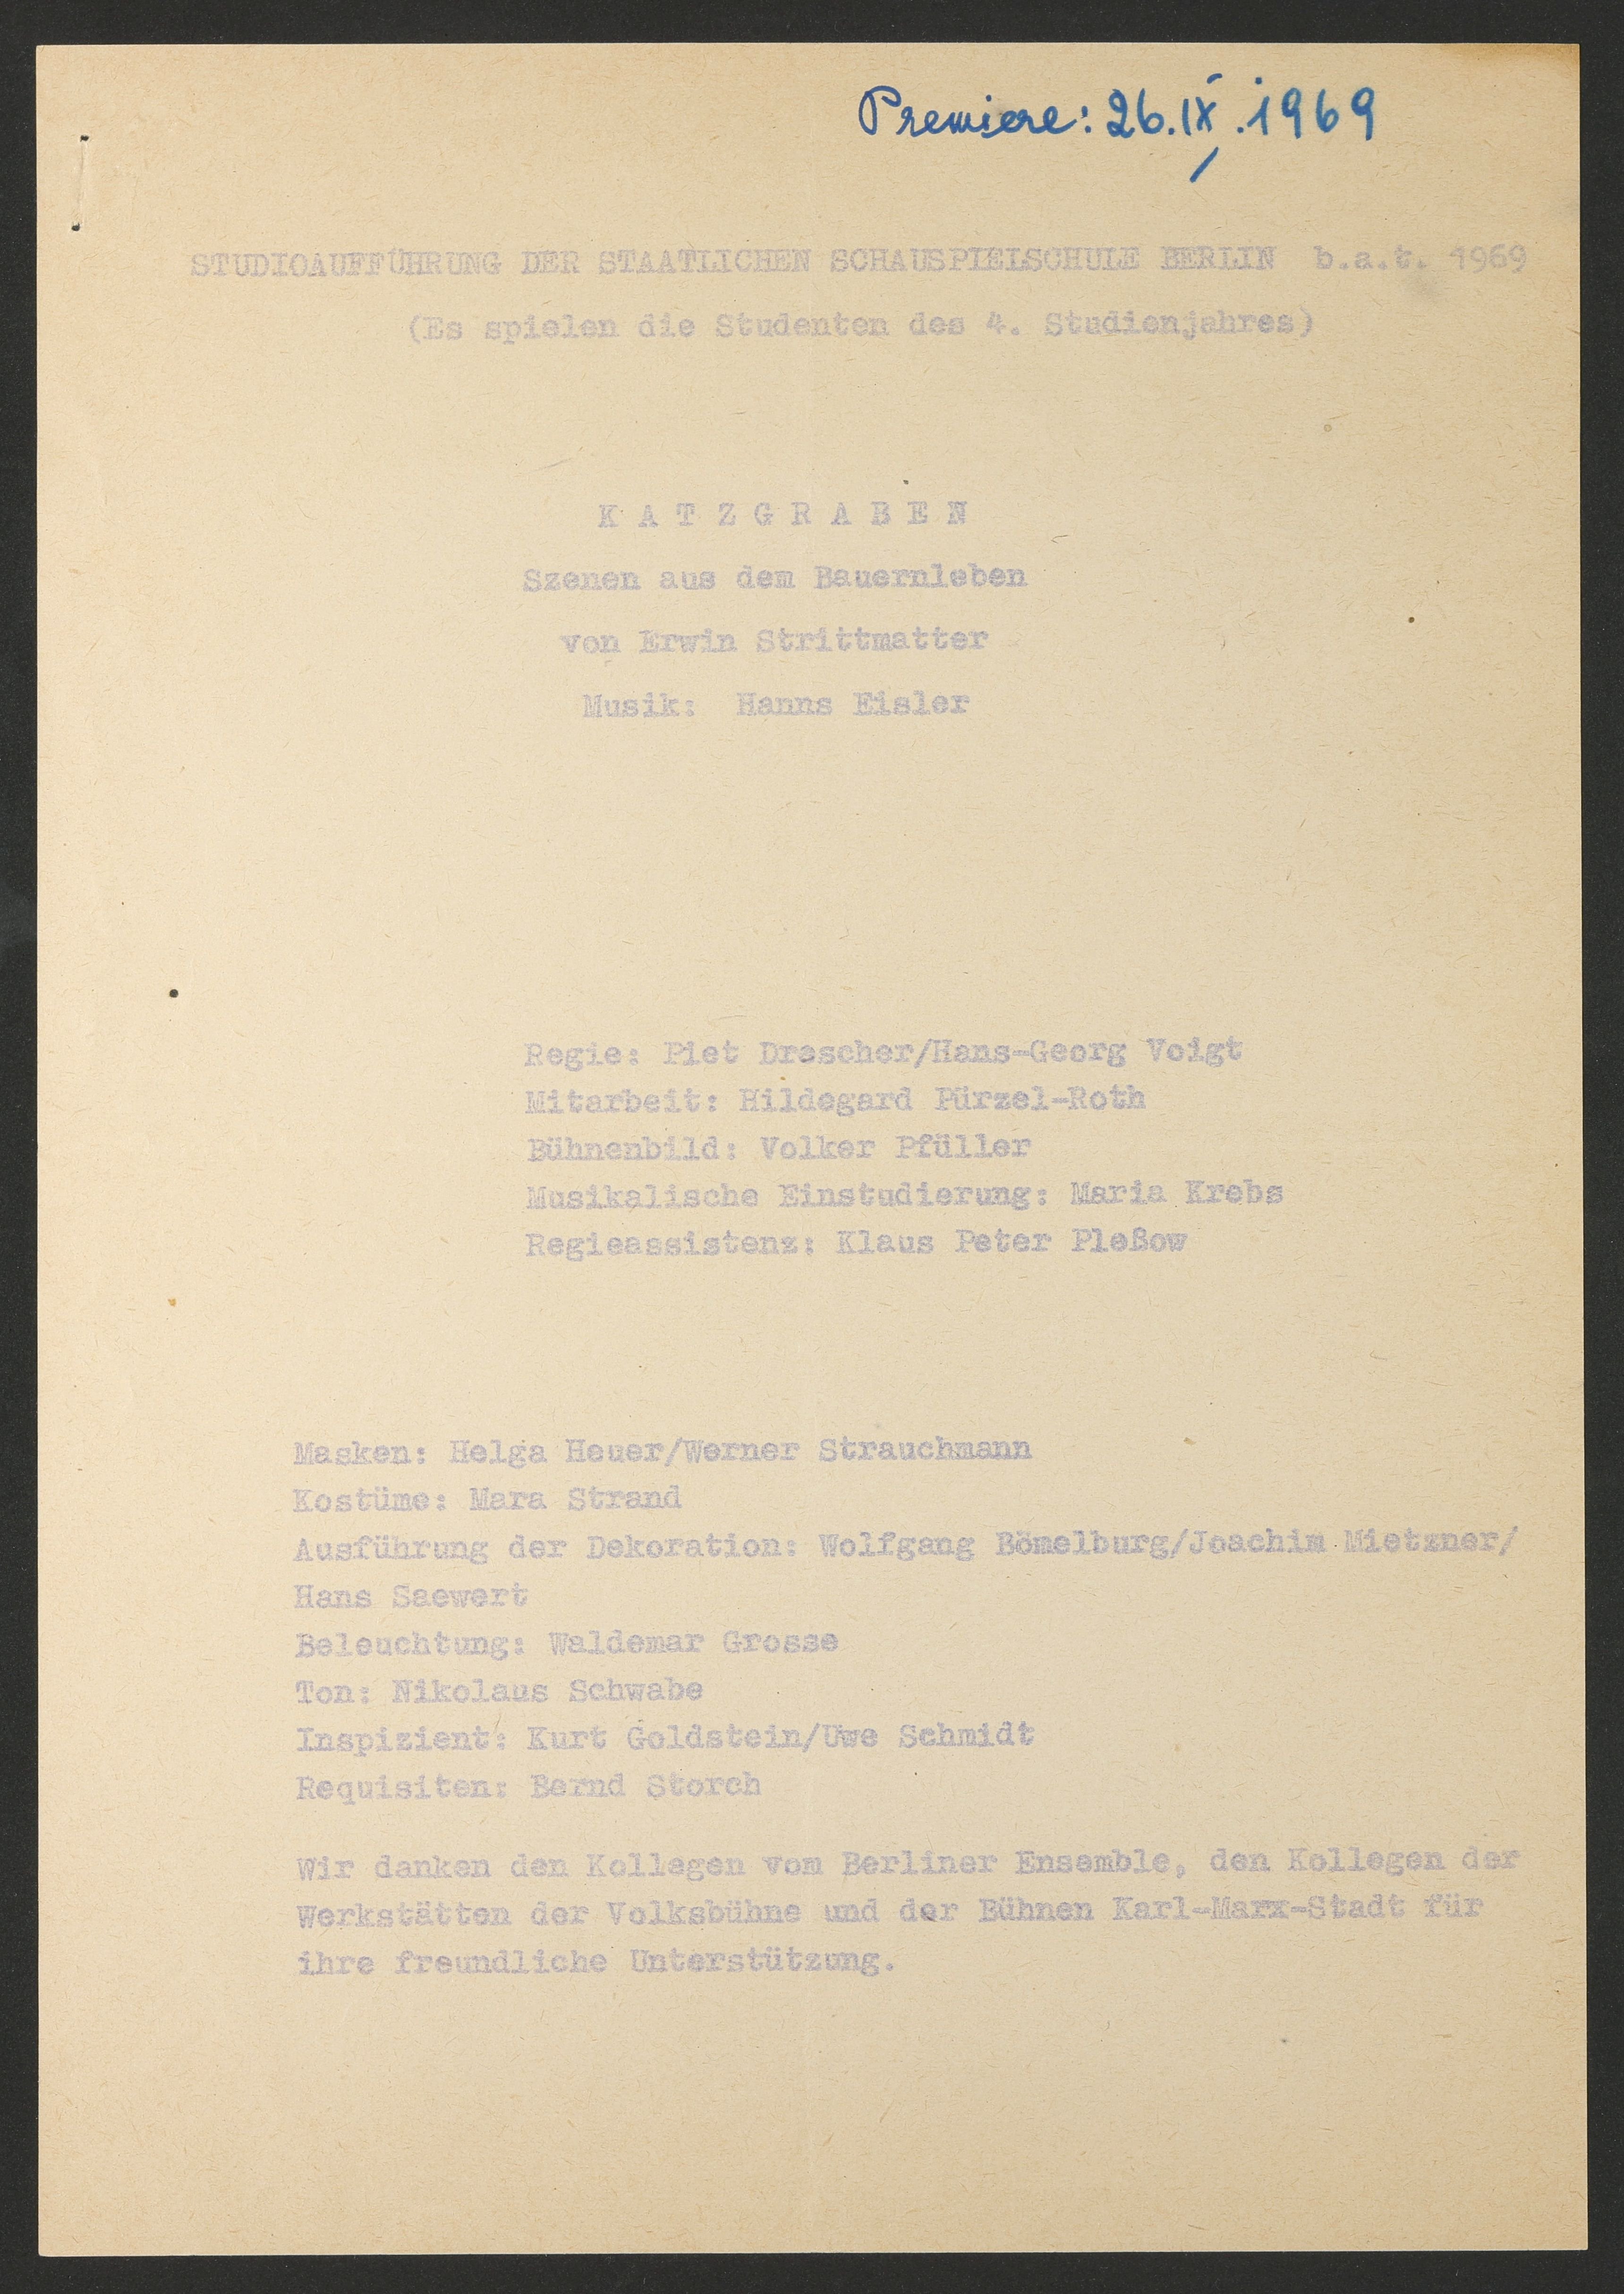 Programmzettelvorlage zu "Katzgraben – Szenen aus dem Bauernleben" am bat-Studiotheater 1969 (Hochschule für Schauspielkunst Ernst Busch Berlin RR-F)